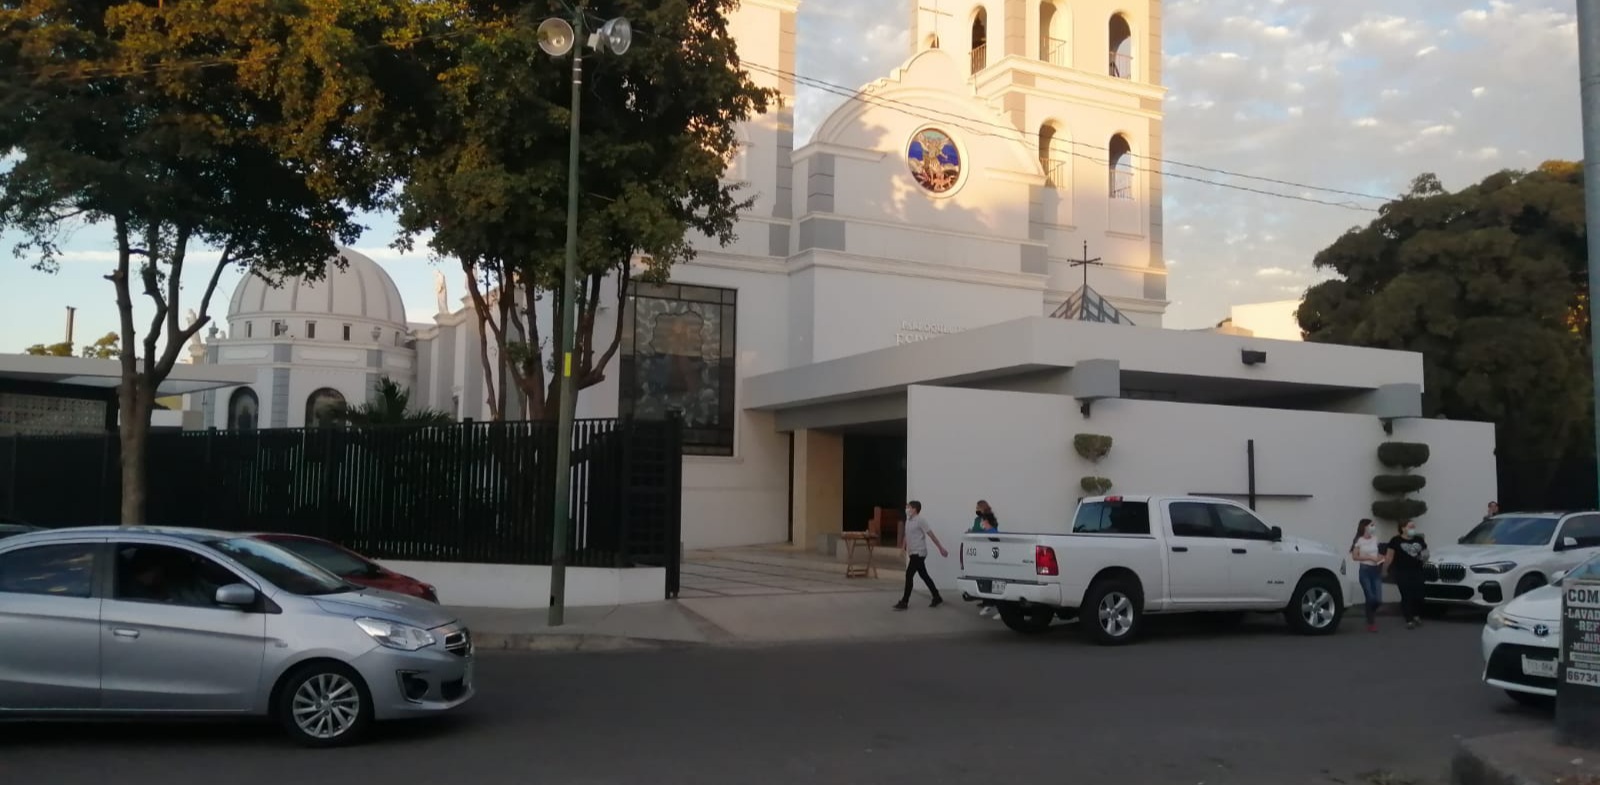 Militares interrumpen misa en Culiacán y detienen a tres – Cafe Negro Portal